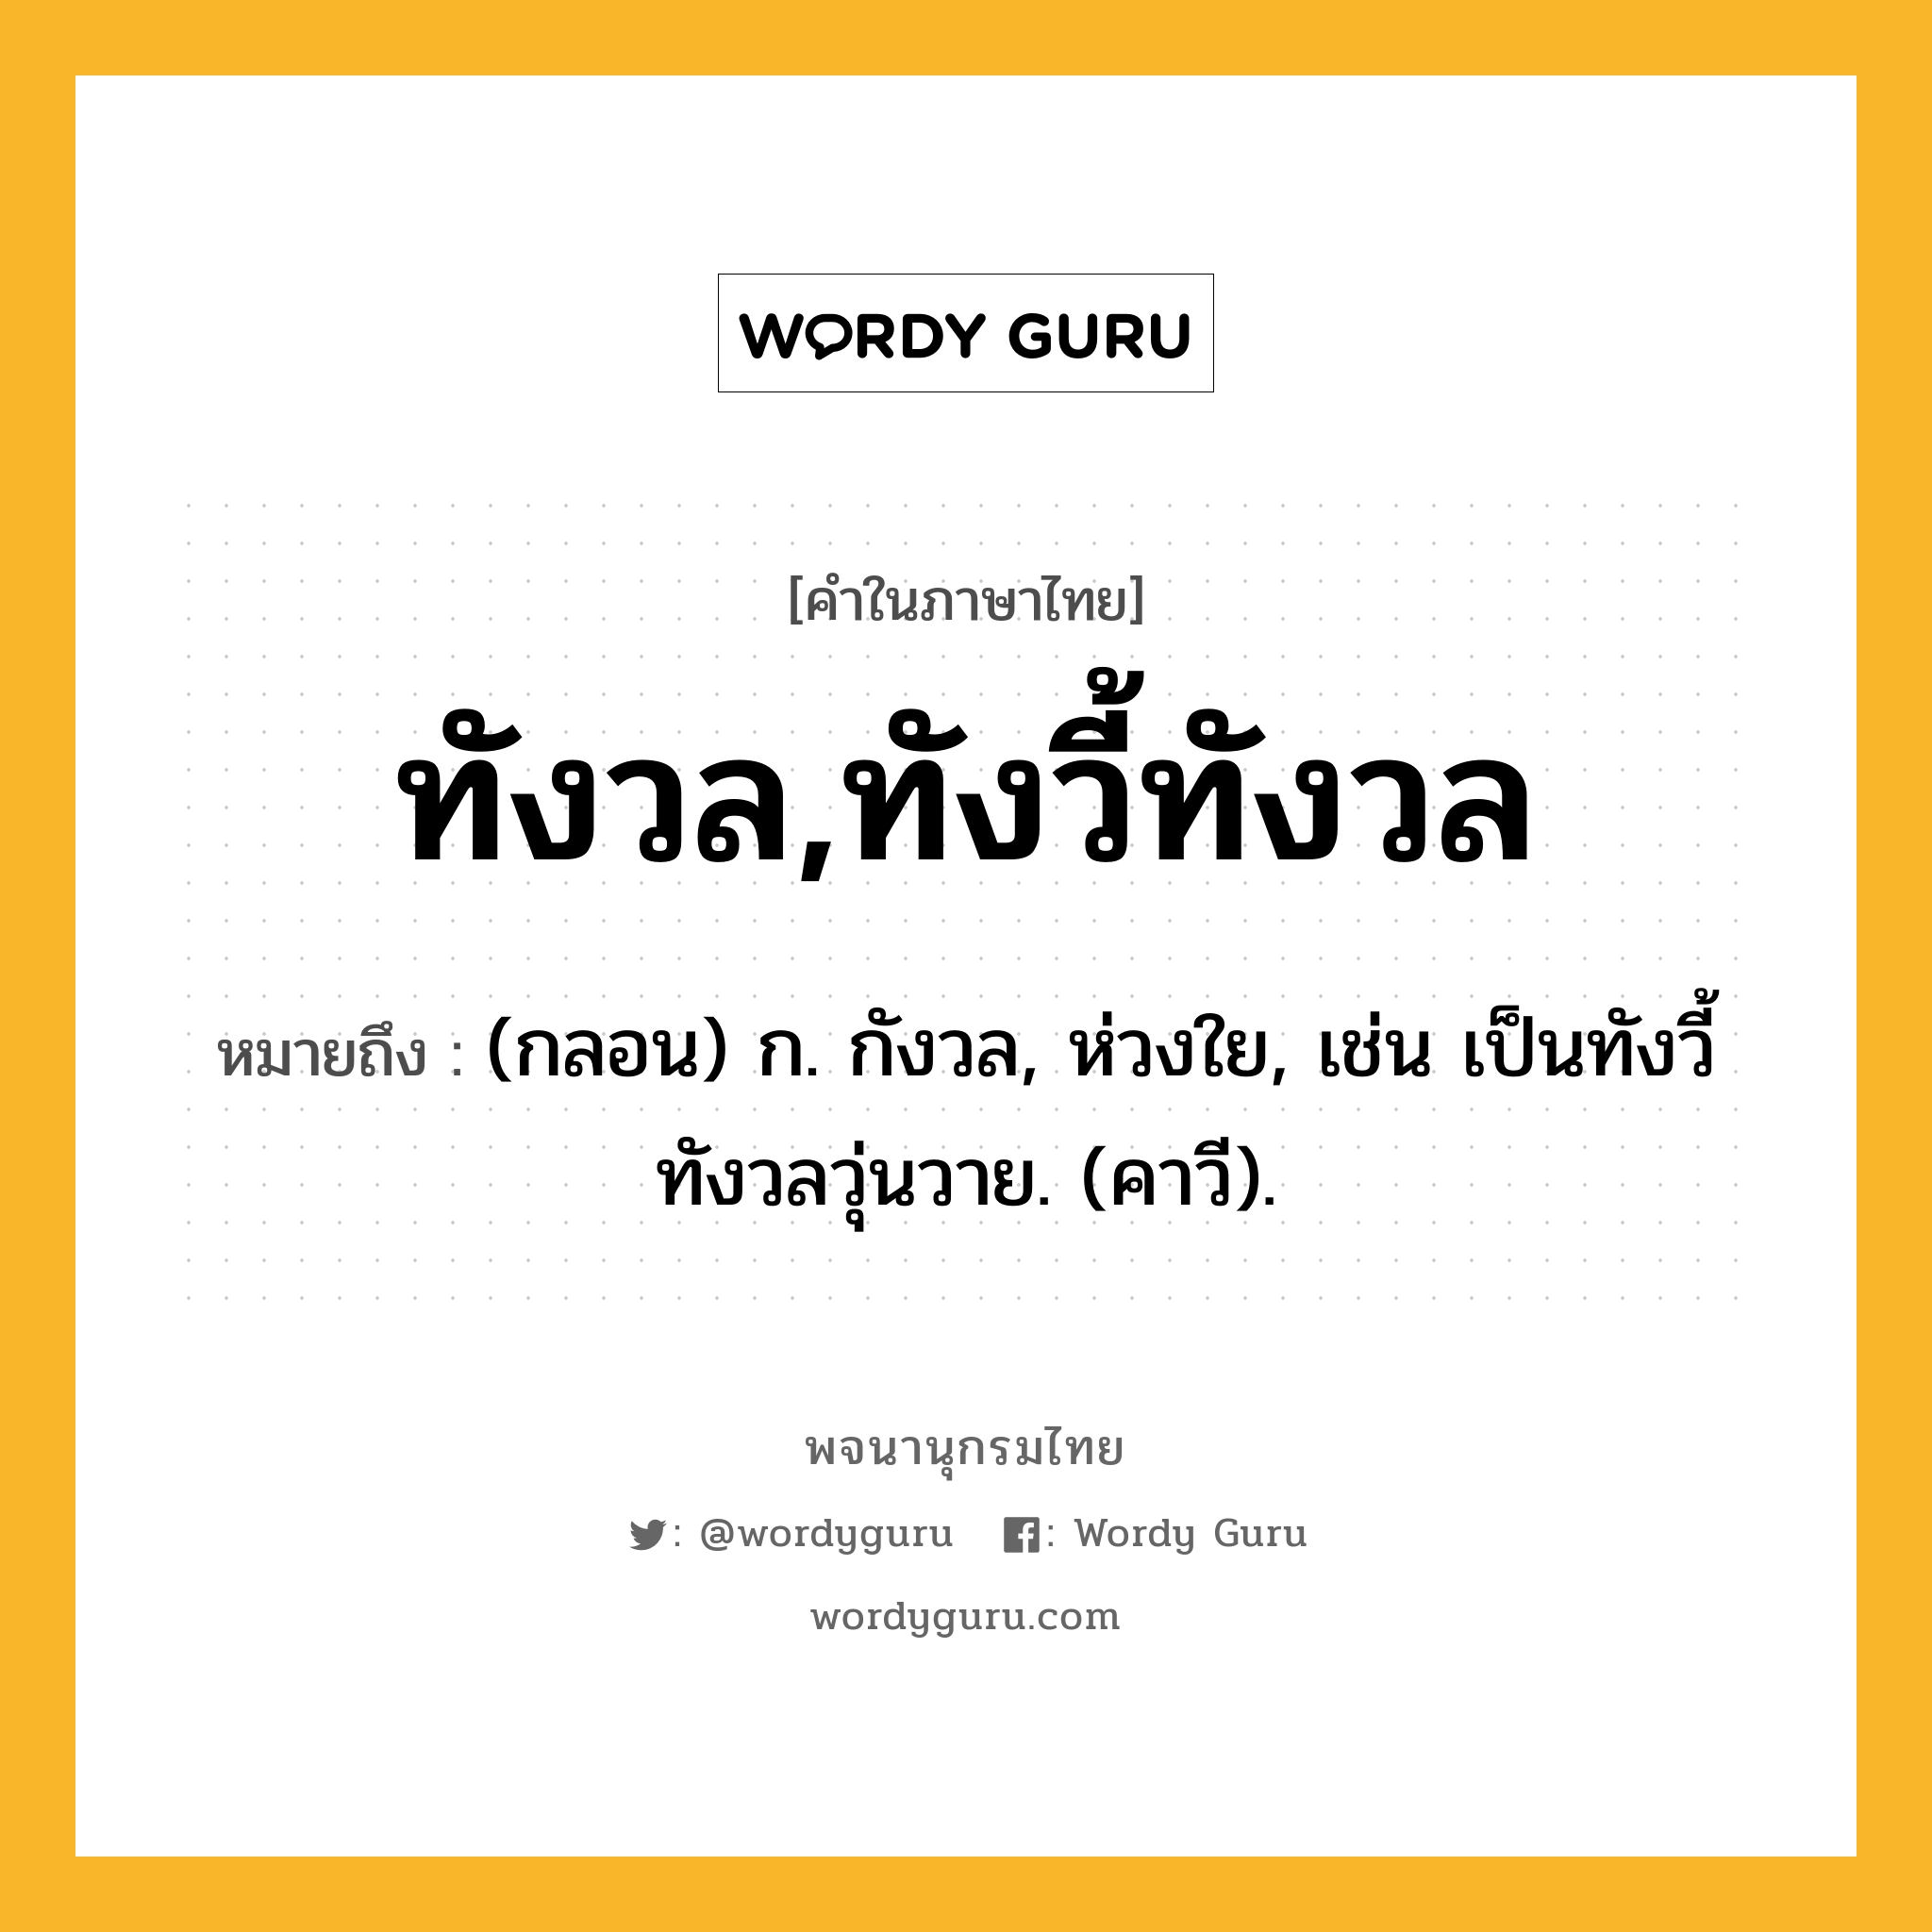 ทังวล,ทังวี้ทังวล หมายถึงอะไร?, คำในภาษาไทย ทังวล,ทังวี้ทังวล หมายถึง (กลอน) ก. กังวล, ห่วงใย, เช่น เป็นทังวี้ทังวลวุ่นวาย. (คาวี).